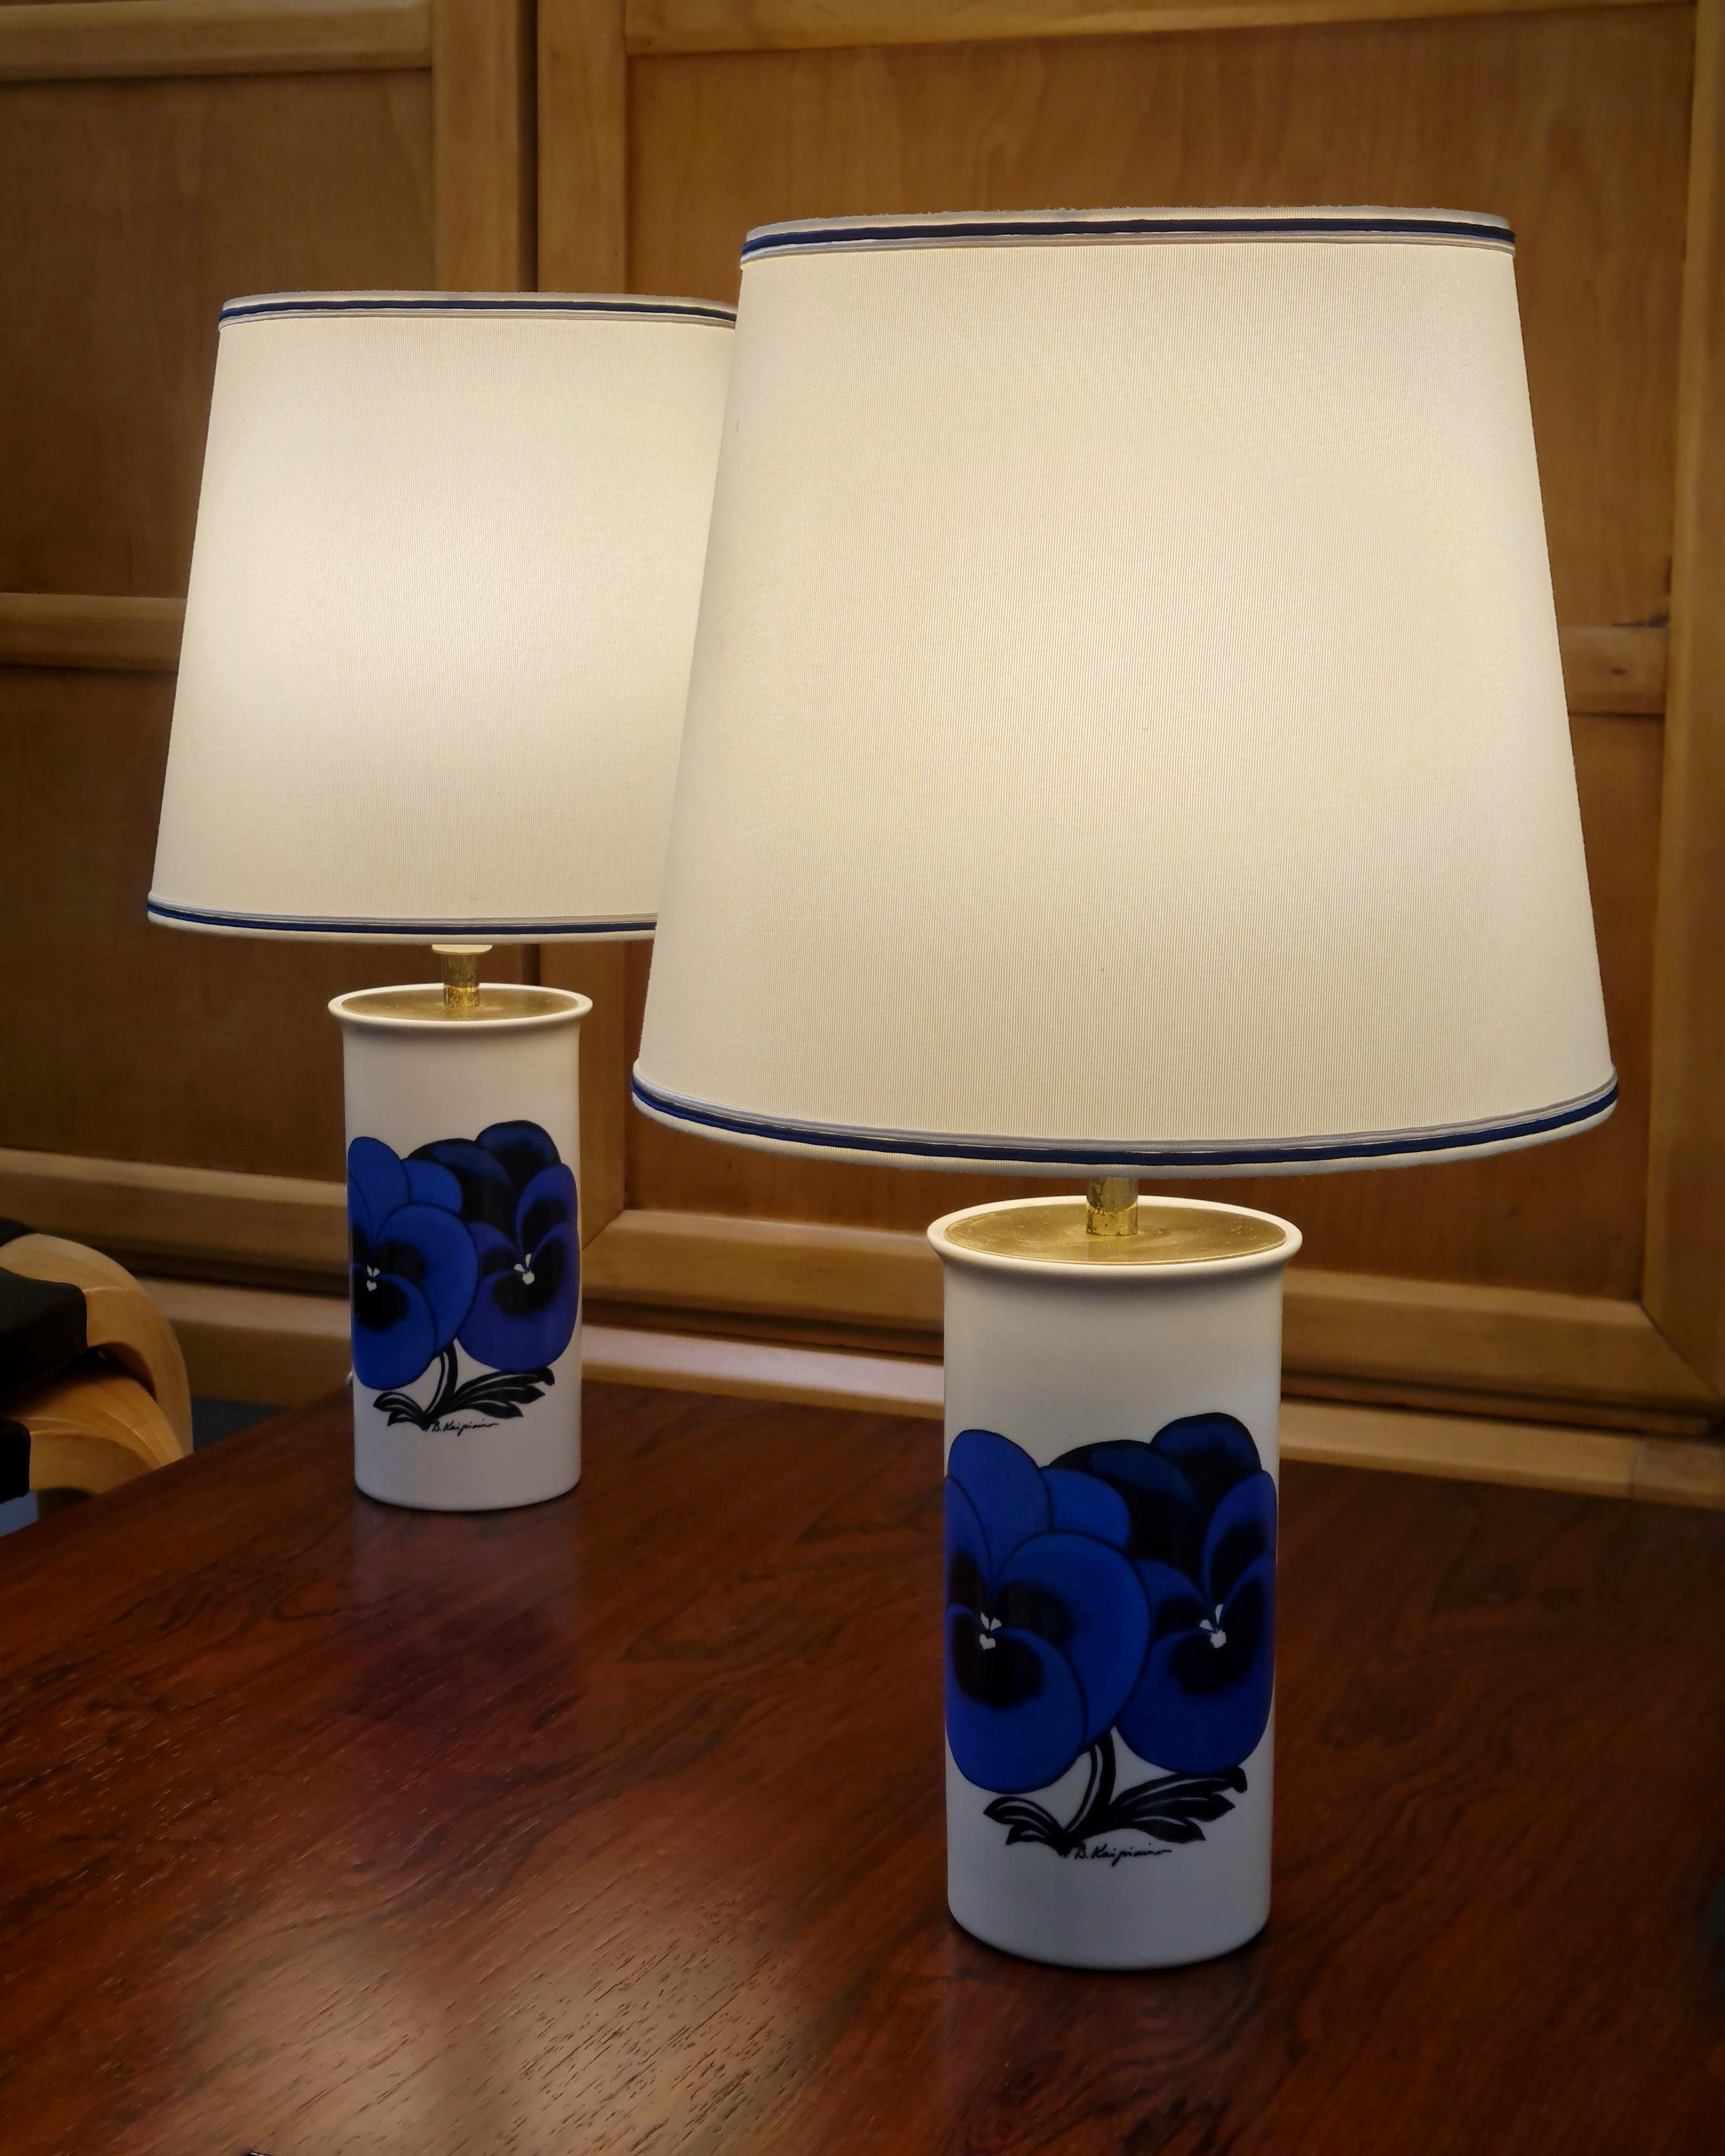 Ein Paar Tischlampen in limitierter Auflage, entworfen von Birger Kaipiainen für das 120-jährige Jubiläum von Stockmann im Jahr 1982. Hergestellt von Arabia OY in Finnland. Ein sehr schönes Paar in tadellosem Originalzustand. Nur 150 Stück dieser